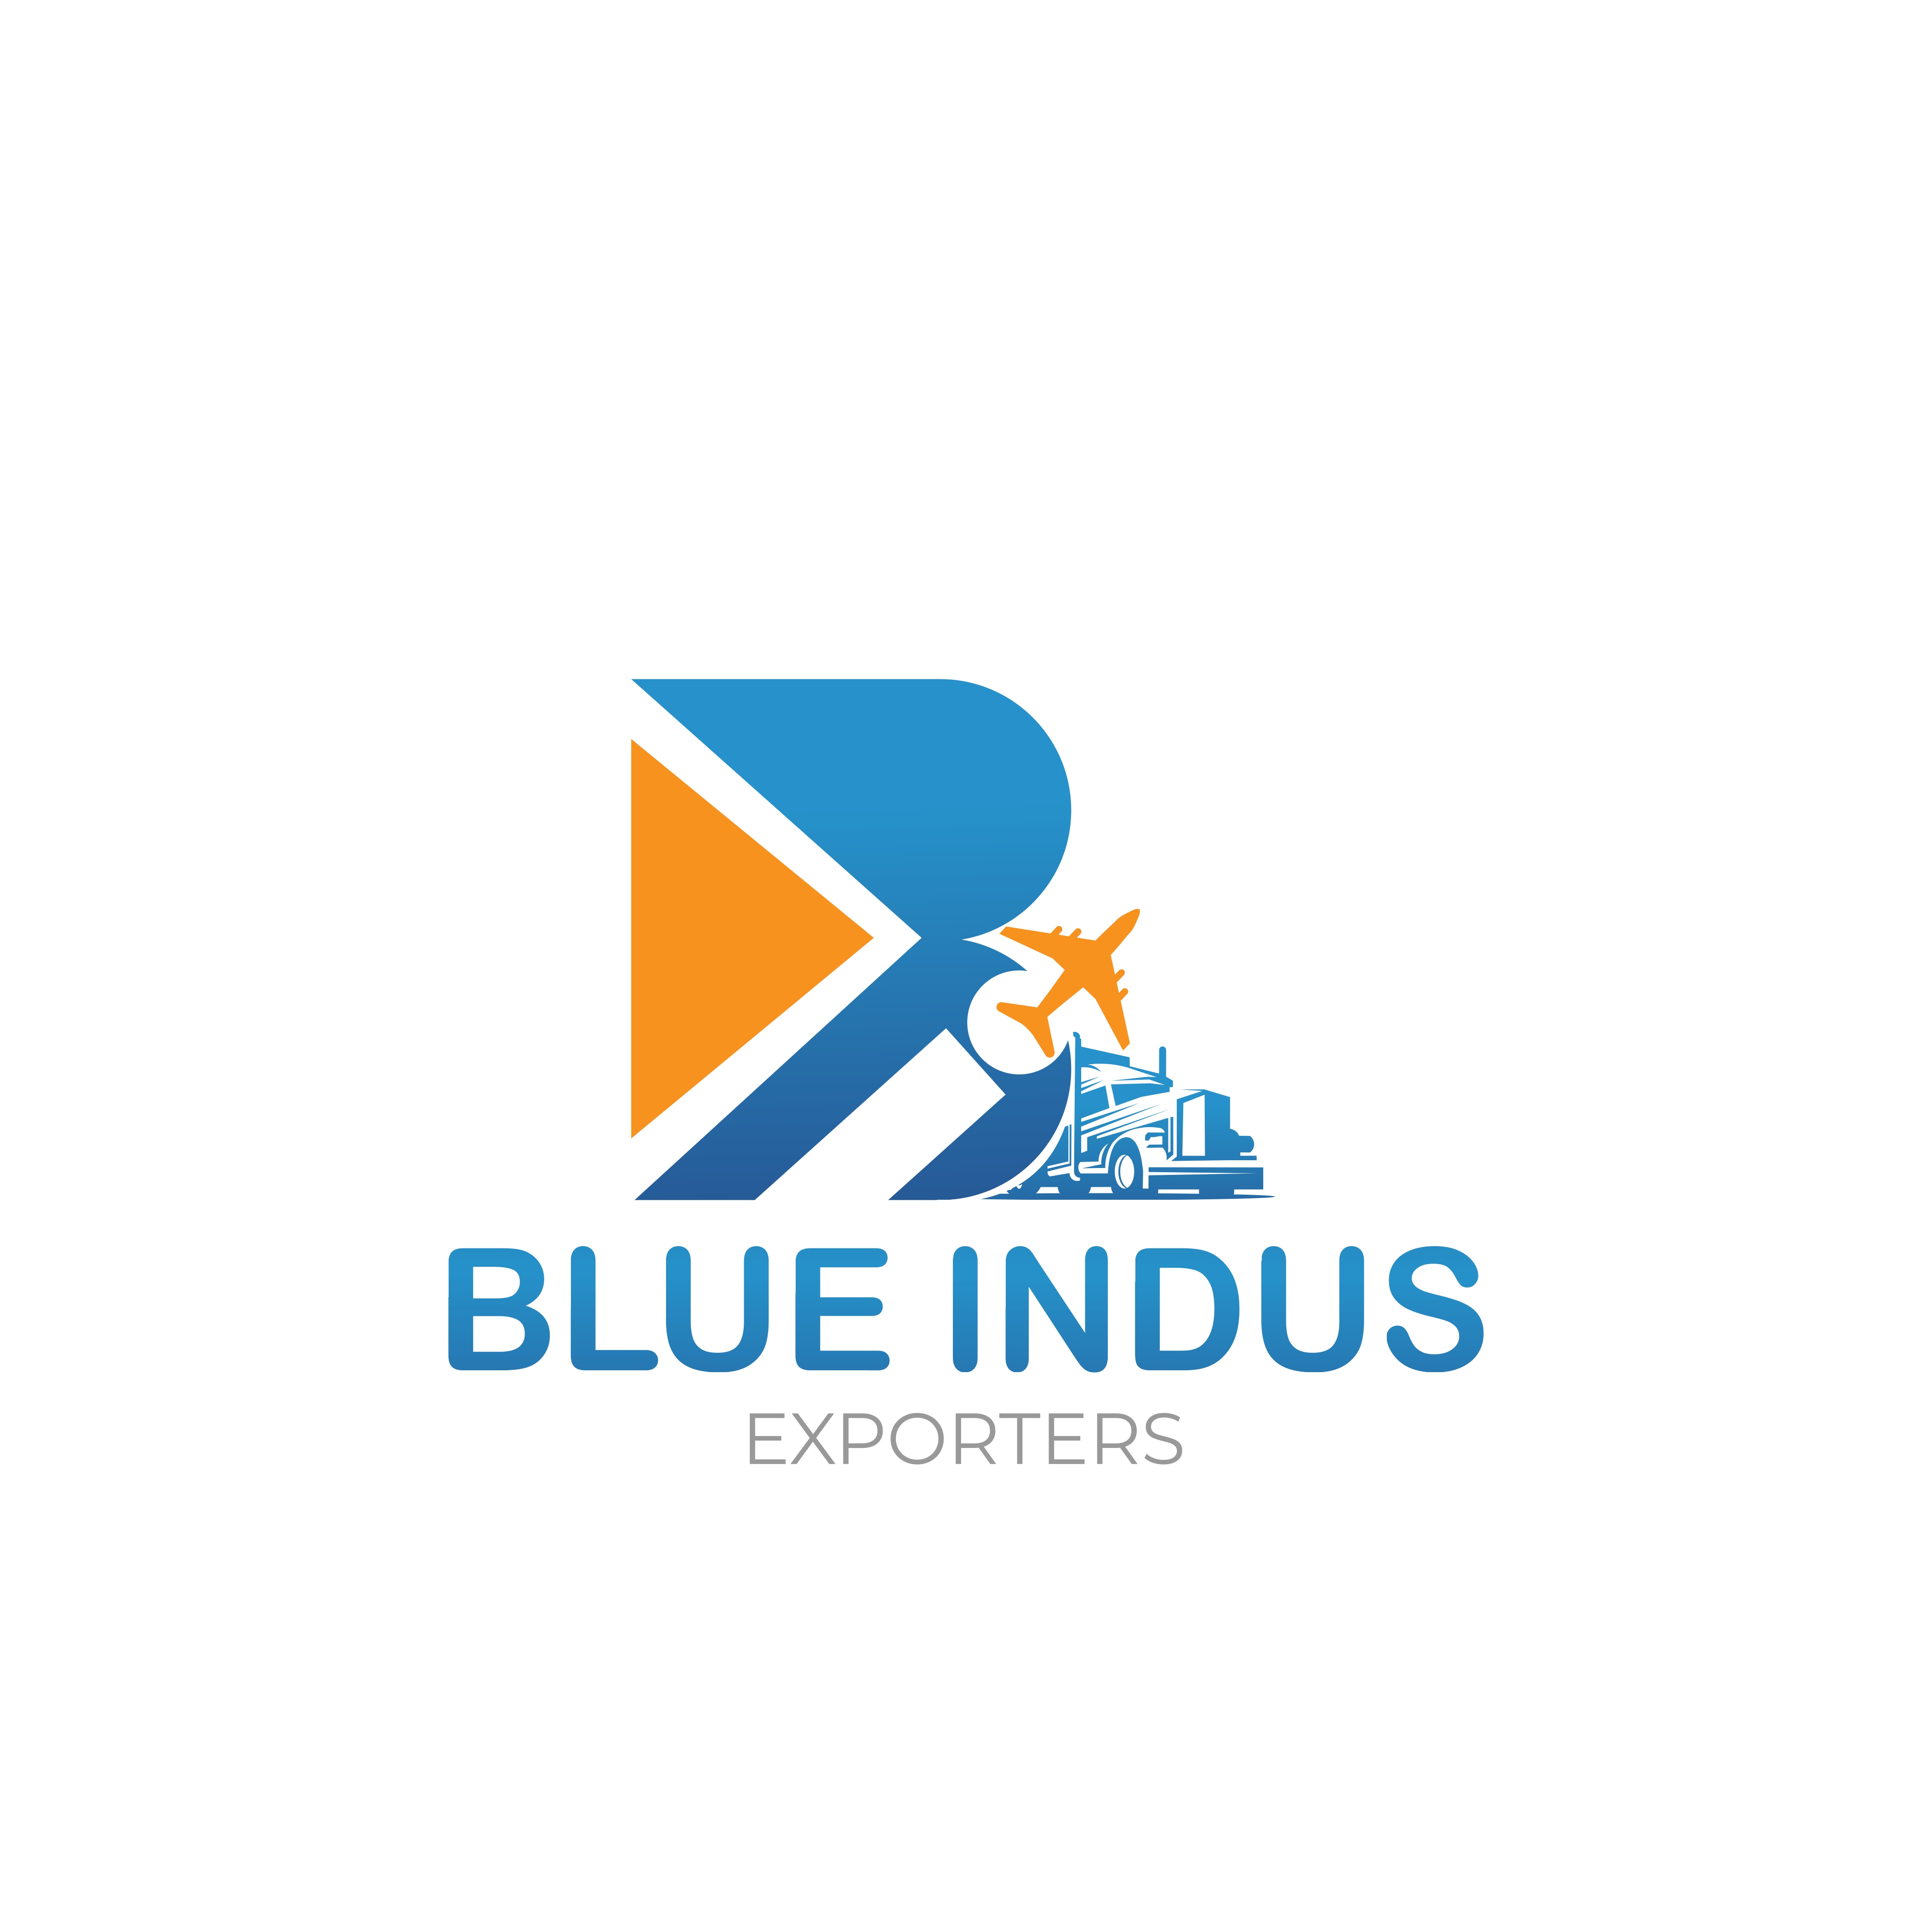 Blue Indus Exporters